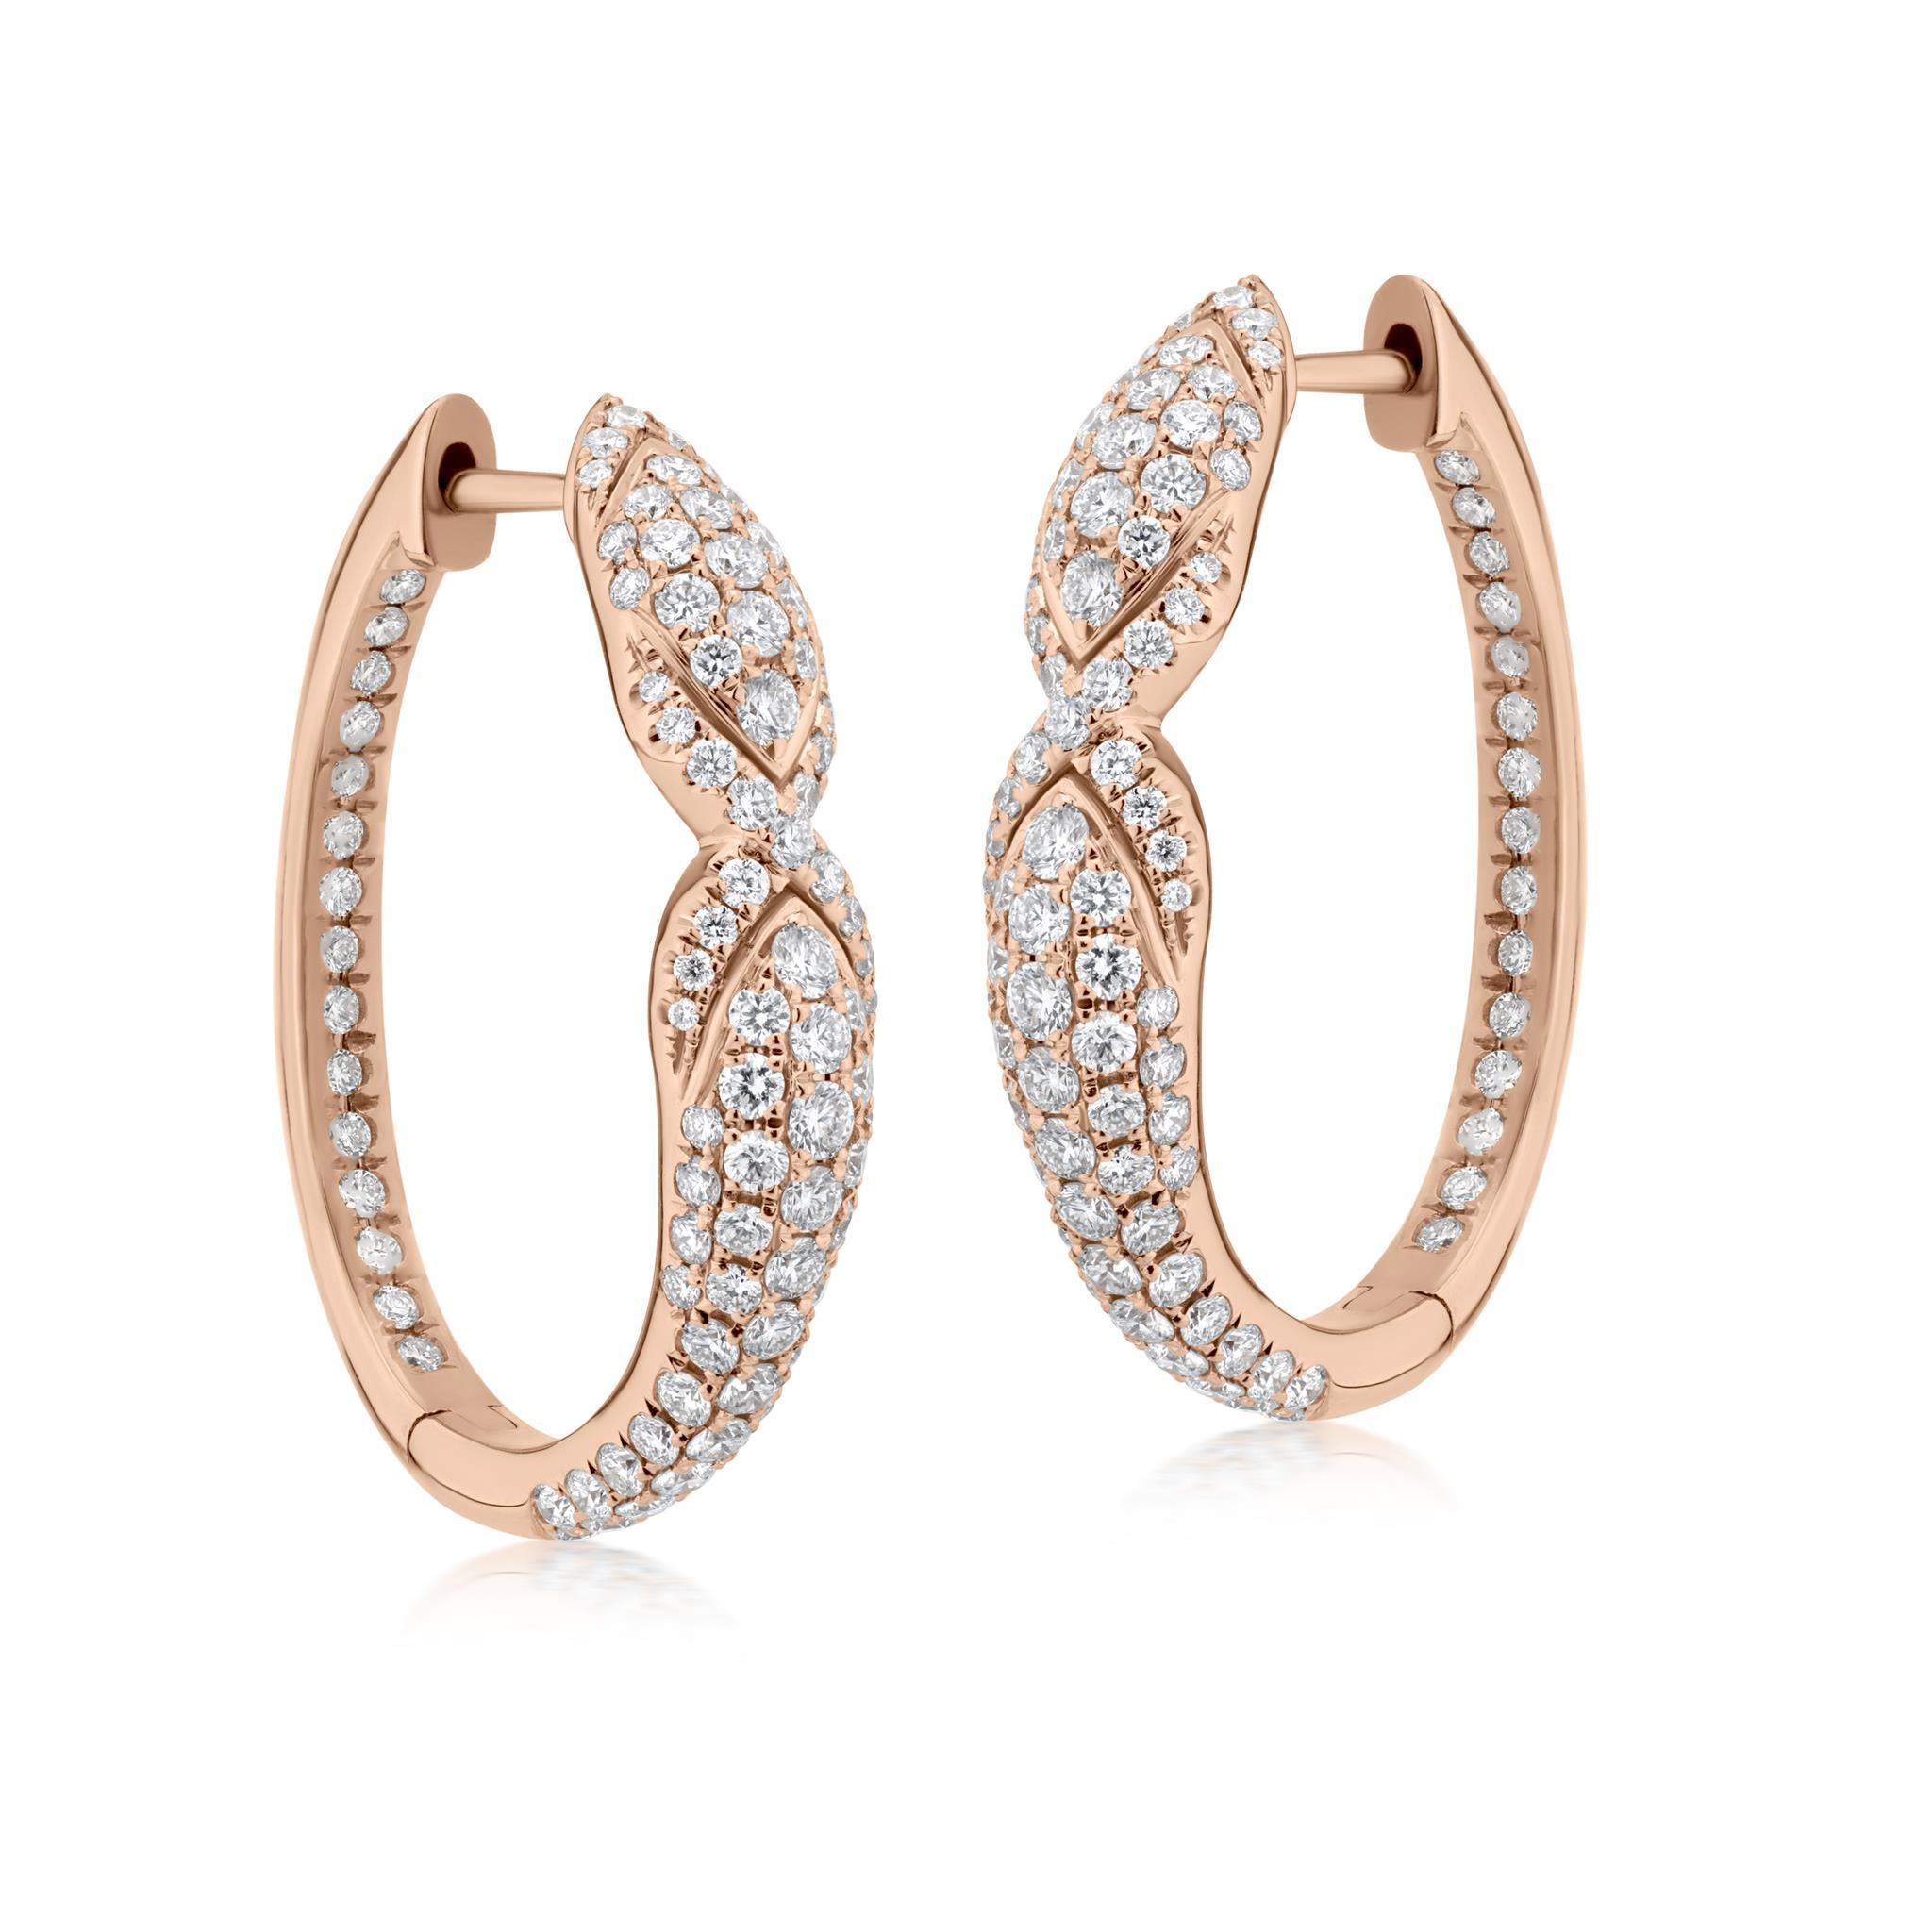 Wir präsentieren die Luxle 1.52 Cttw. Diamantene Serpentine Hoop Earrings in 18K Ross Gold - eine faszinierende Mischung aus Opulenz und Kunstfertigkeit, die aus jedem Blickwinkel Eleganz ausstrahlt. Diese perfekt gefertigten Ohrringe definieren mit